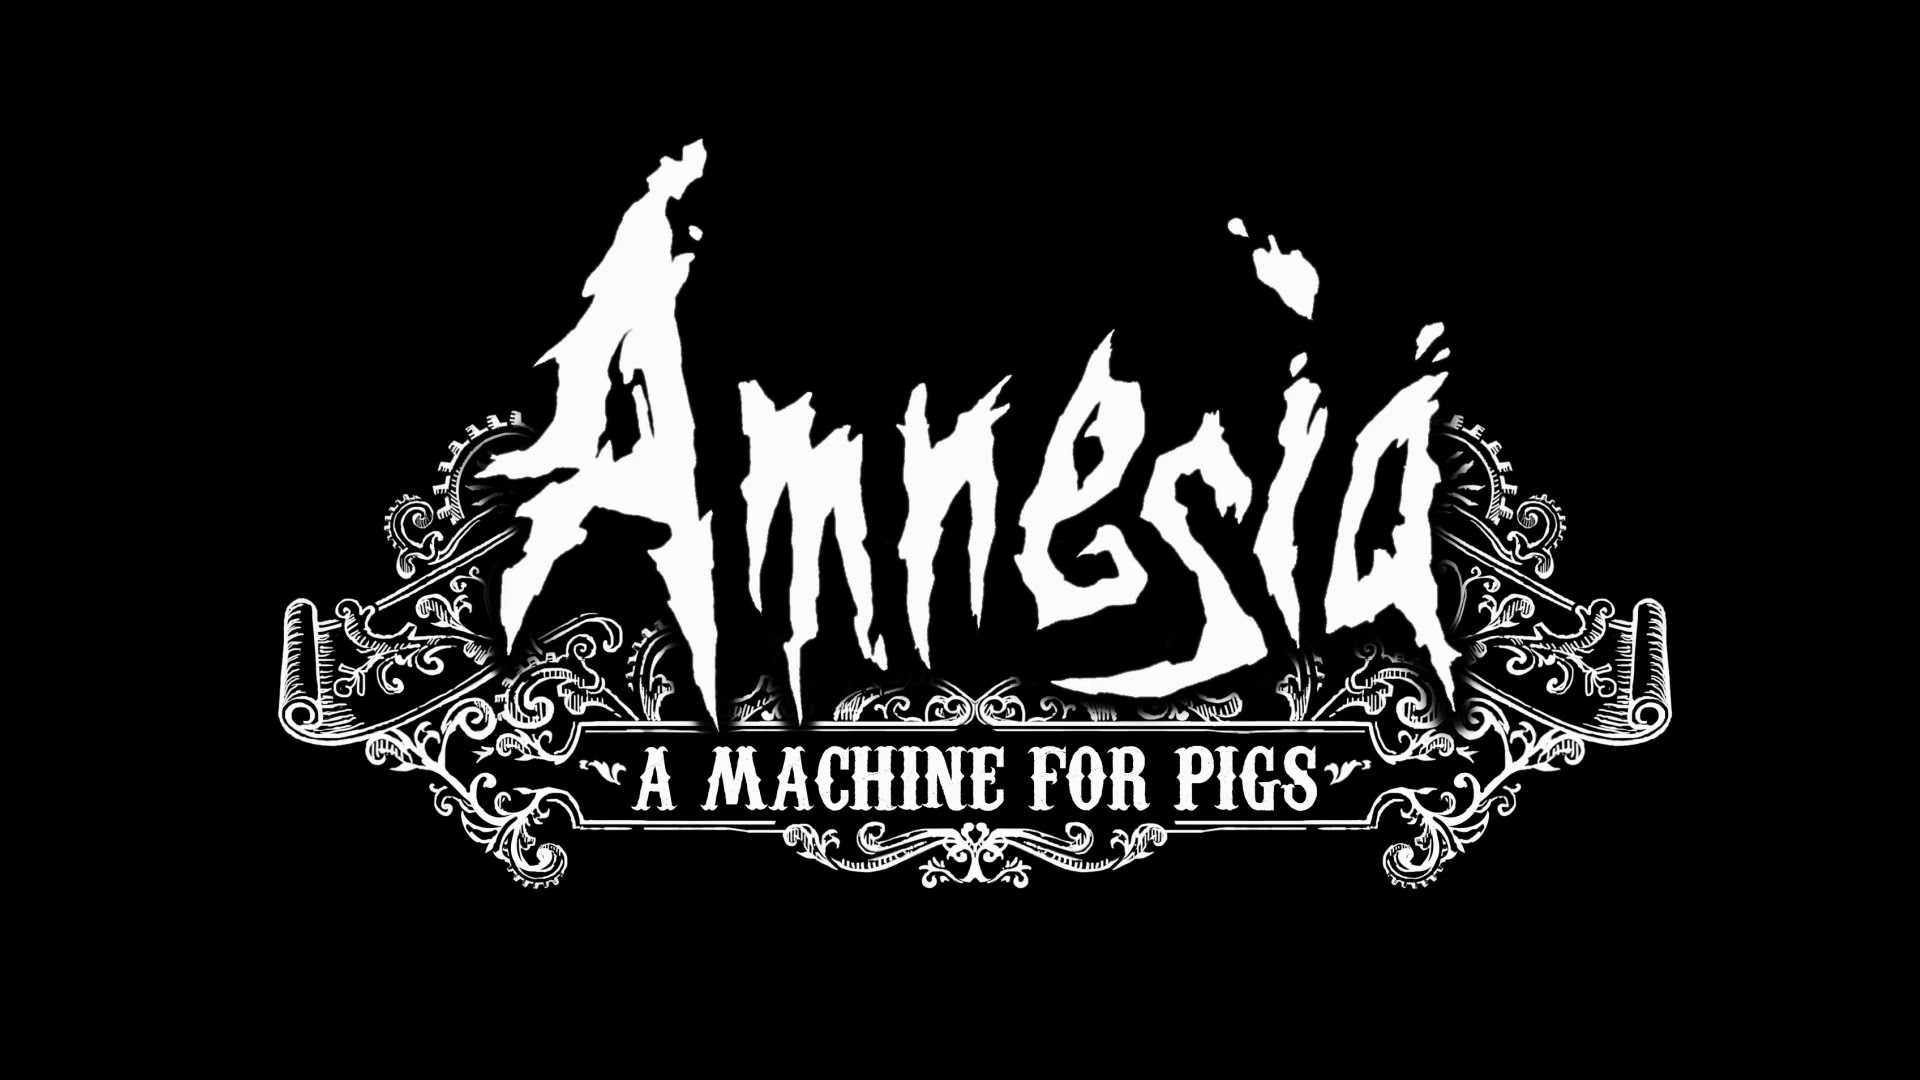 Obrint les comportes. Amnesia: A machine for pigs #10 de JordandelAlmendordan